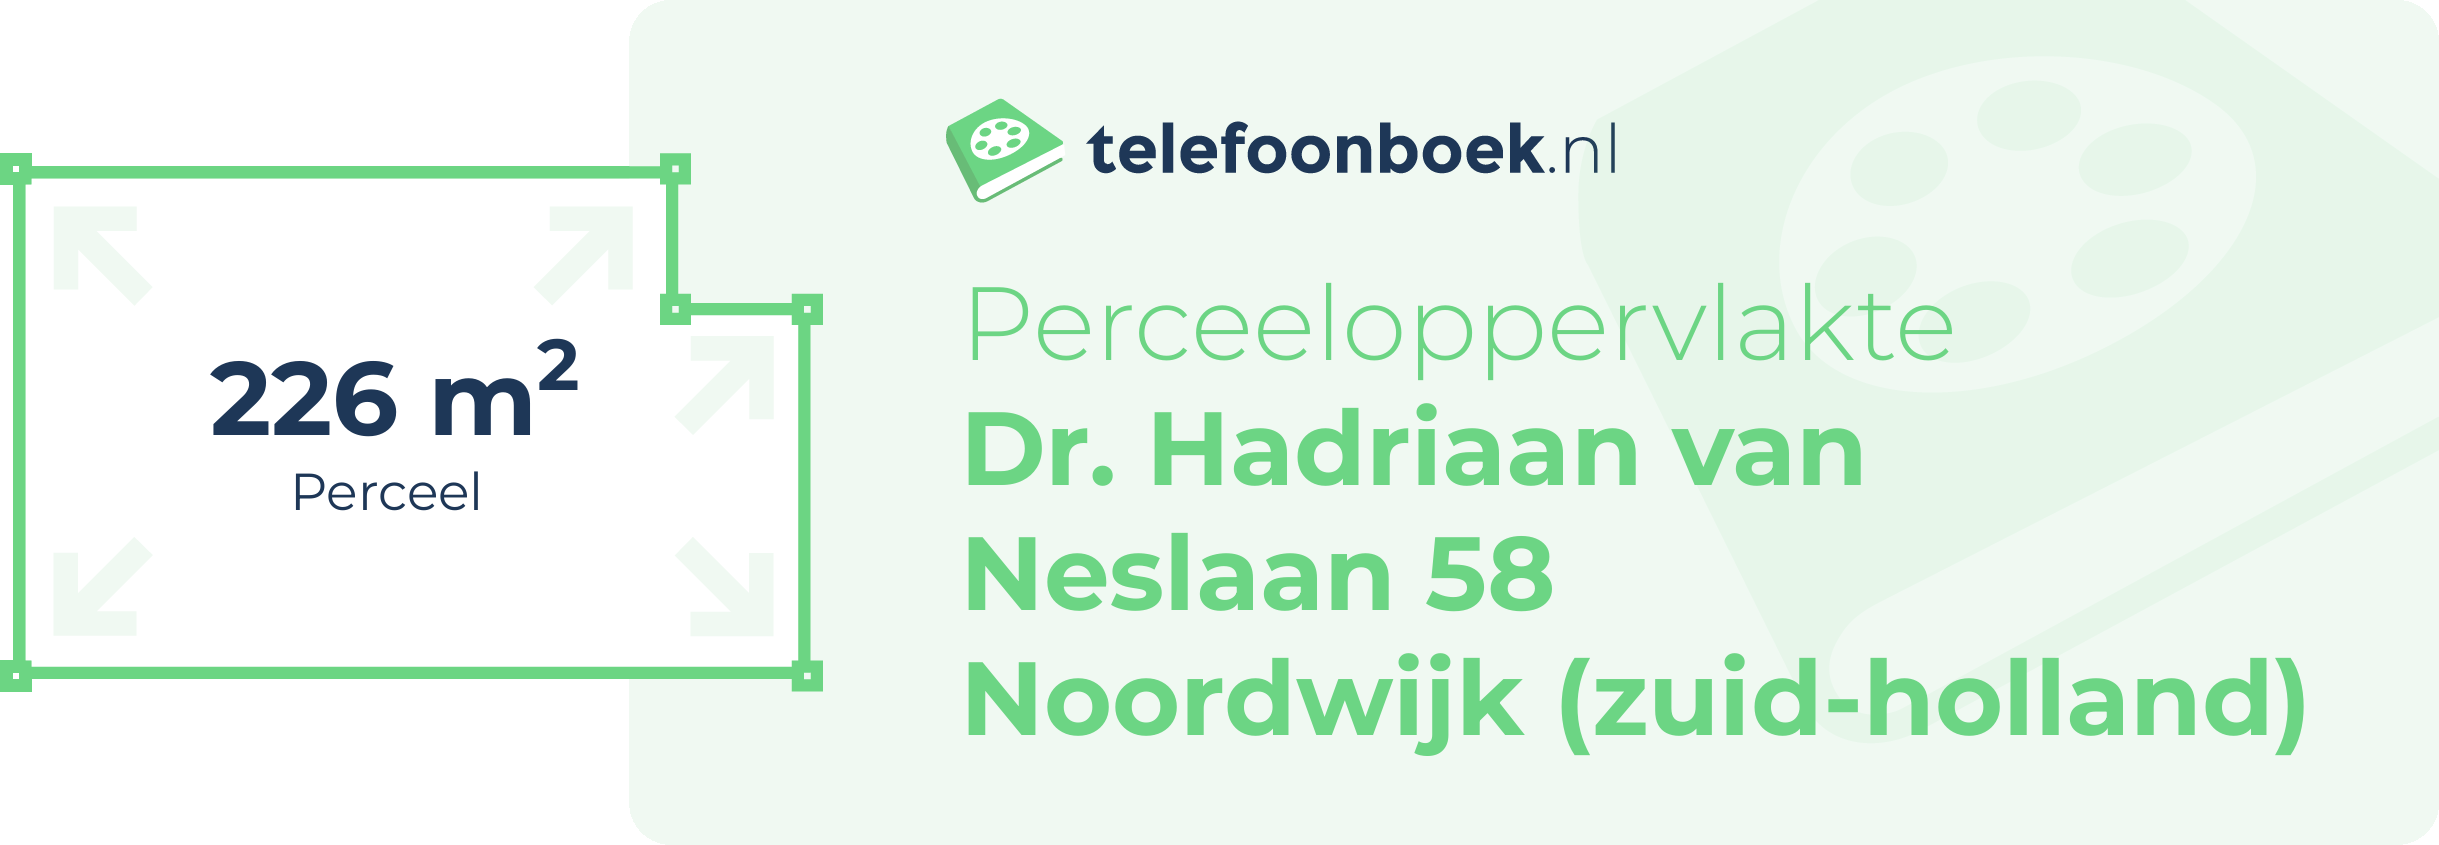 Perceeloppervlakte Dr. Hadriaan Van Neslaan 58 Noordwijk (Zuid-Holland)